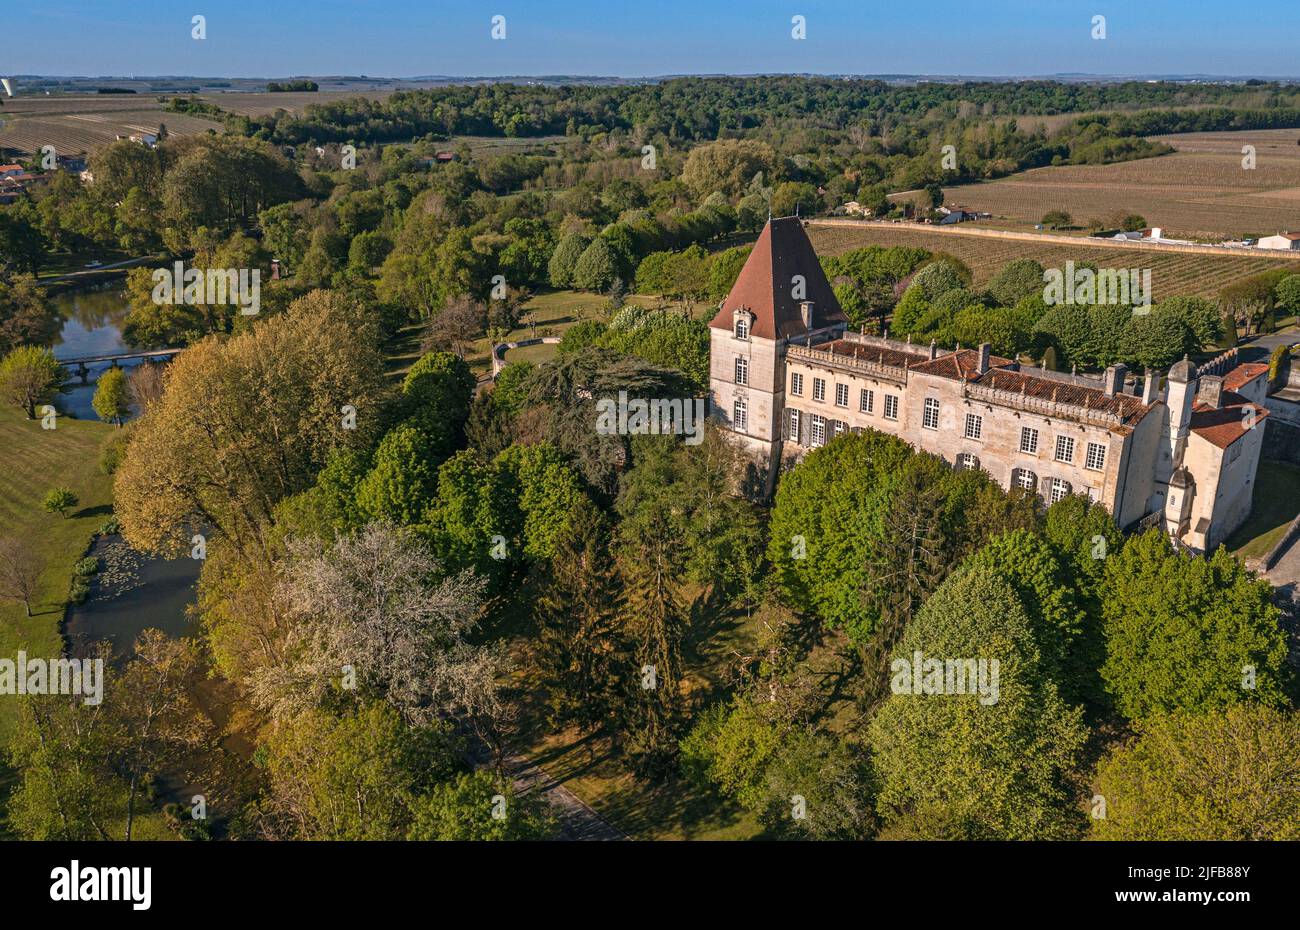 Francia, Charente, Bourg Charente, el castillo de Bourg pertenece a la familia Marnier-Lapostolle, produce allí licores Grand Marnier (vista aérea) Foto de stock